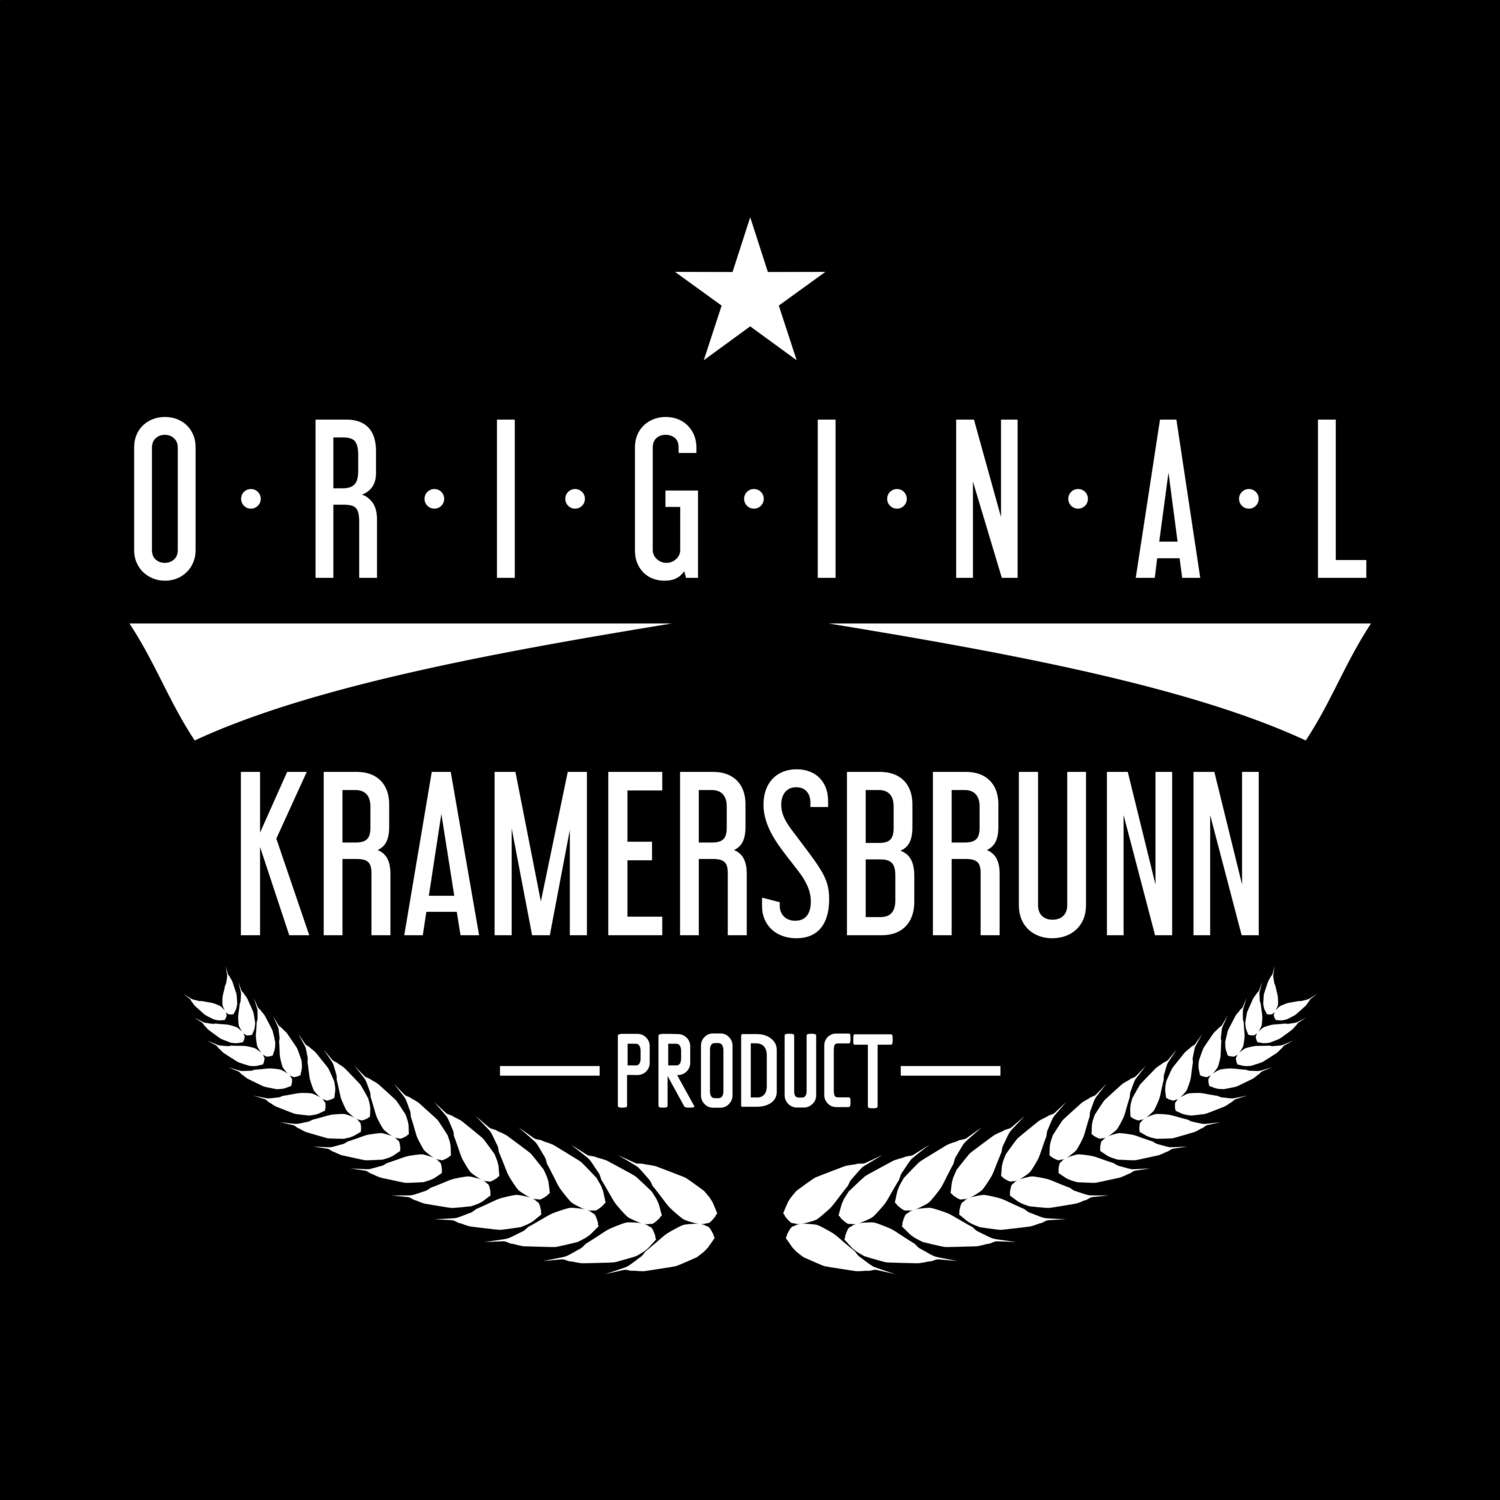 Kramersbrunn T-Shirt »Original Product«